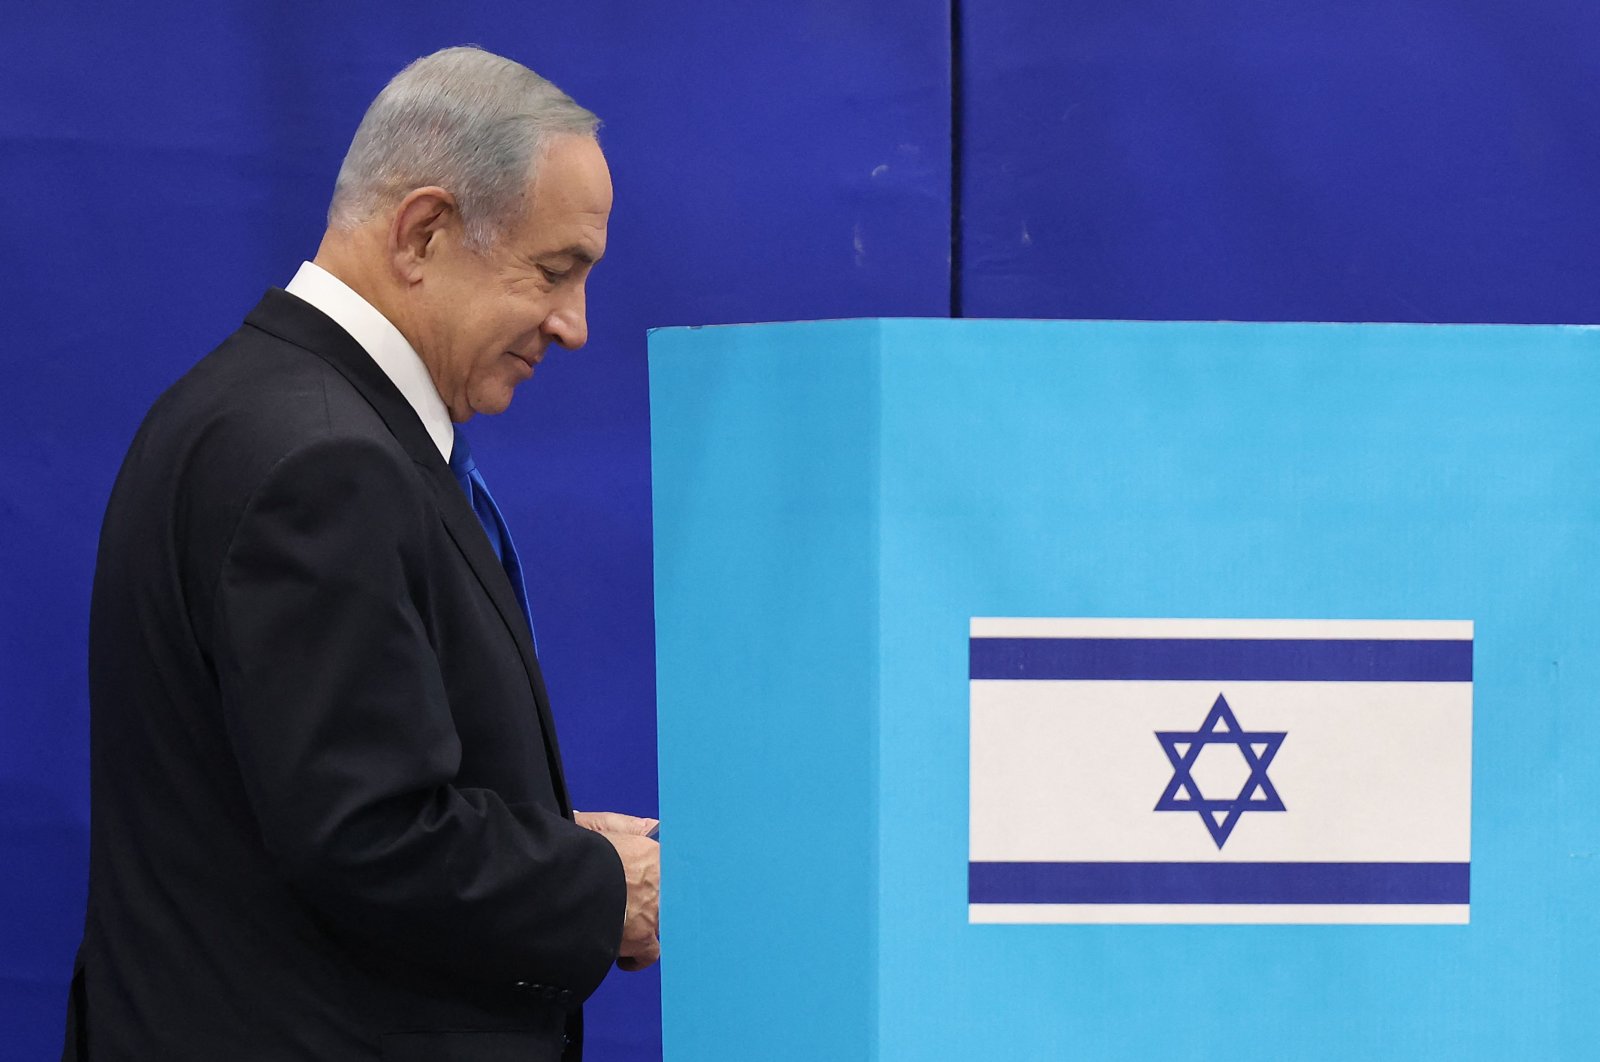 Netanyahu dari Israel diperkirakan akan memenangkan mayoritas dalam jajak pendapat